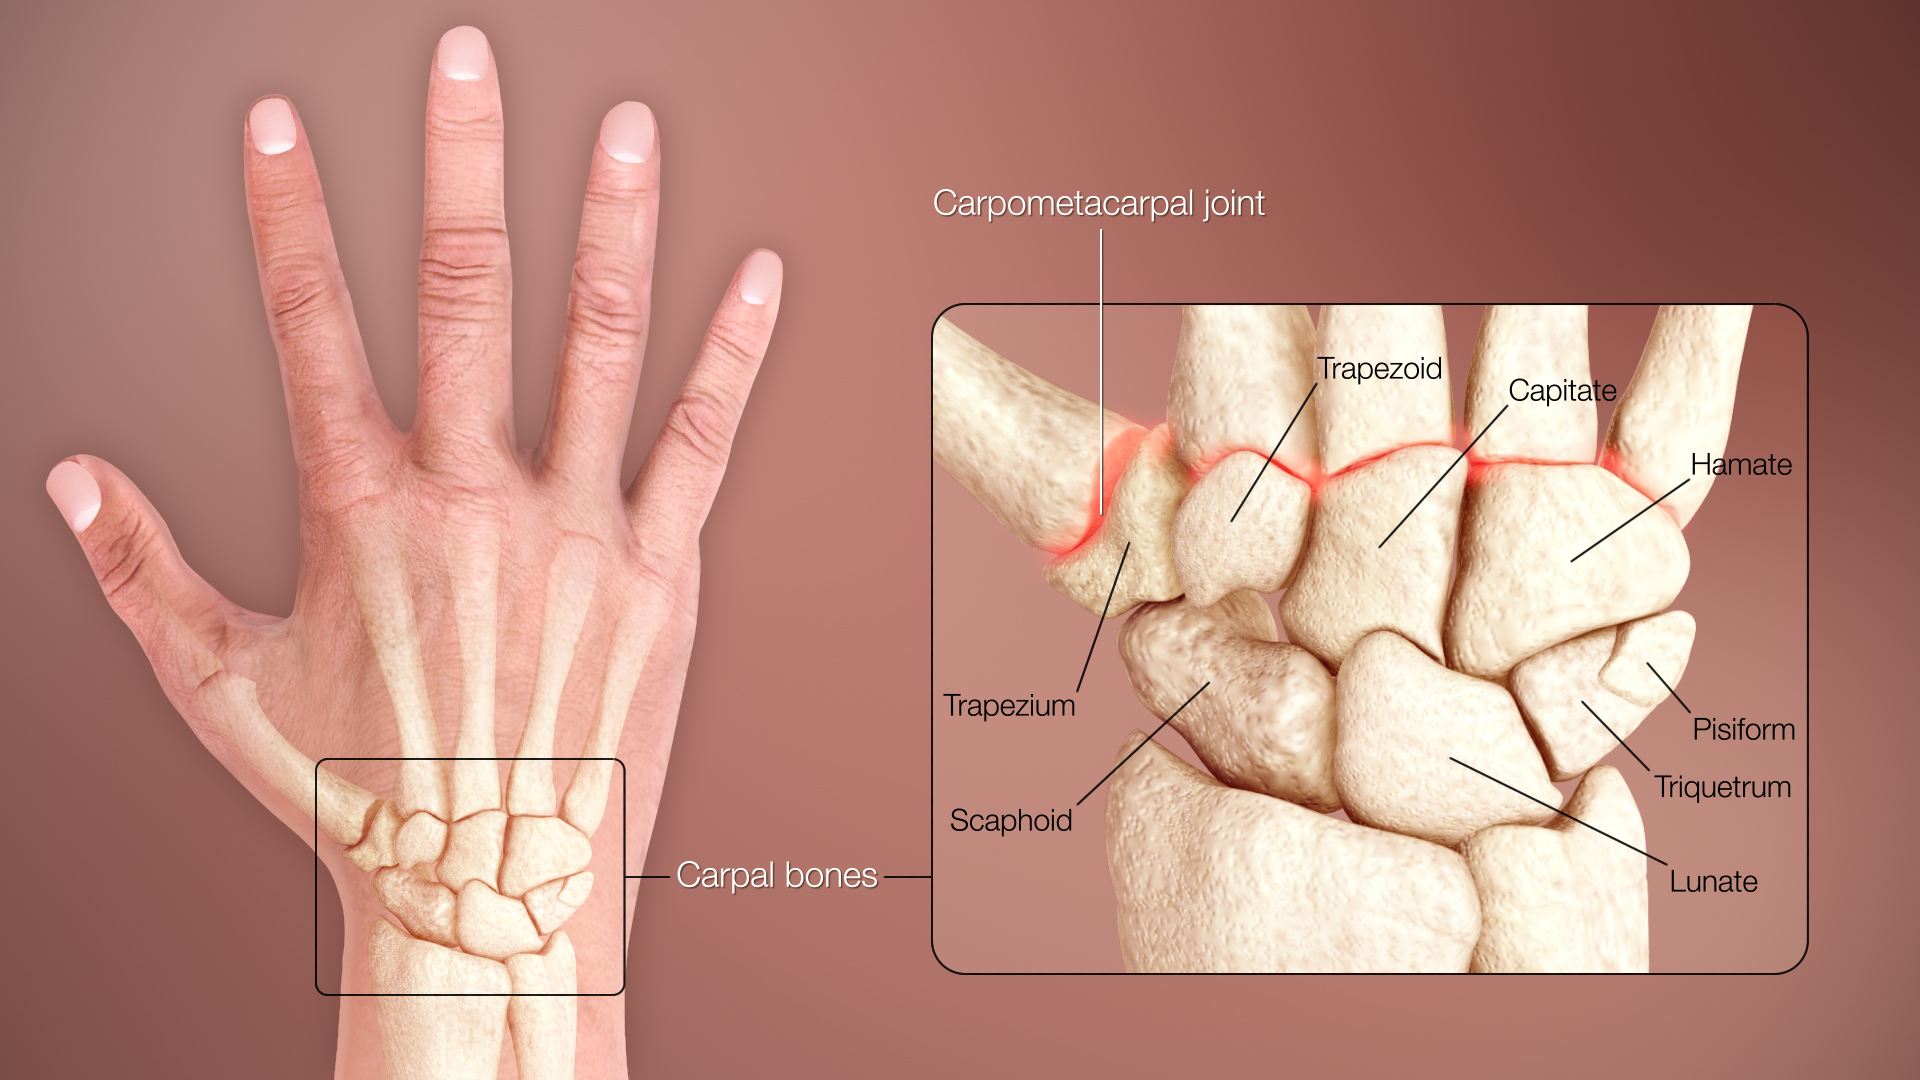 artritisz artrózis kezelő készülék thaiföldi gyógyszer ízületi fájdalmak kezelésére